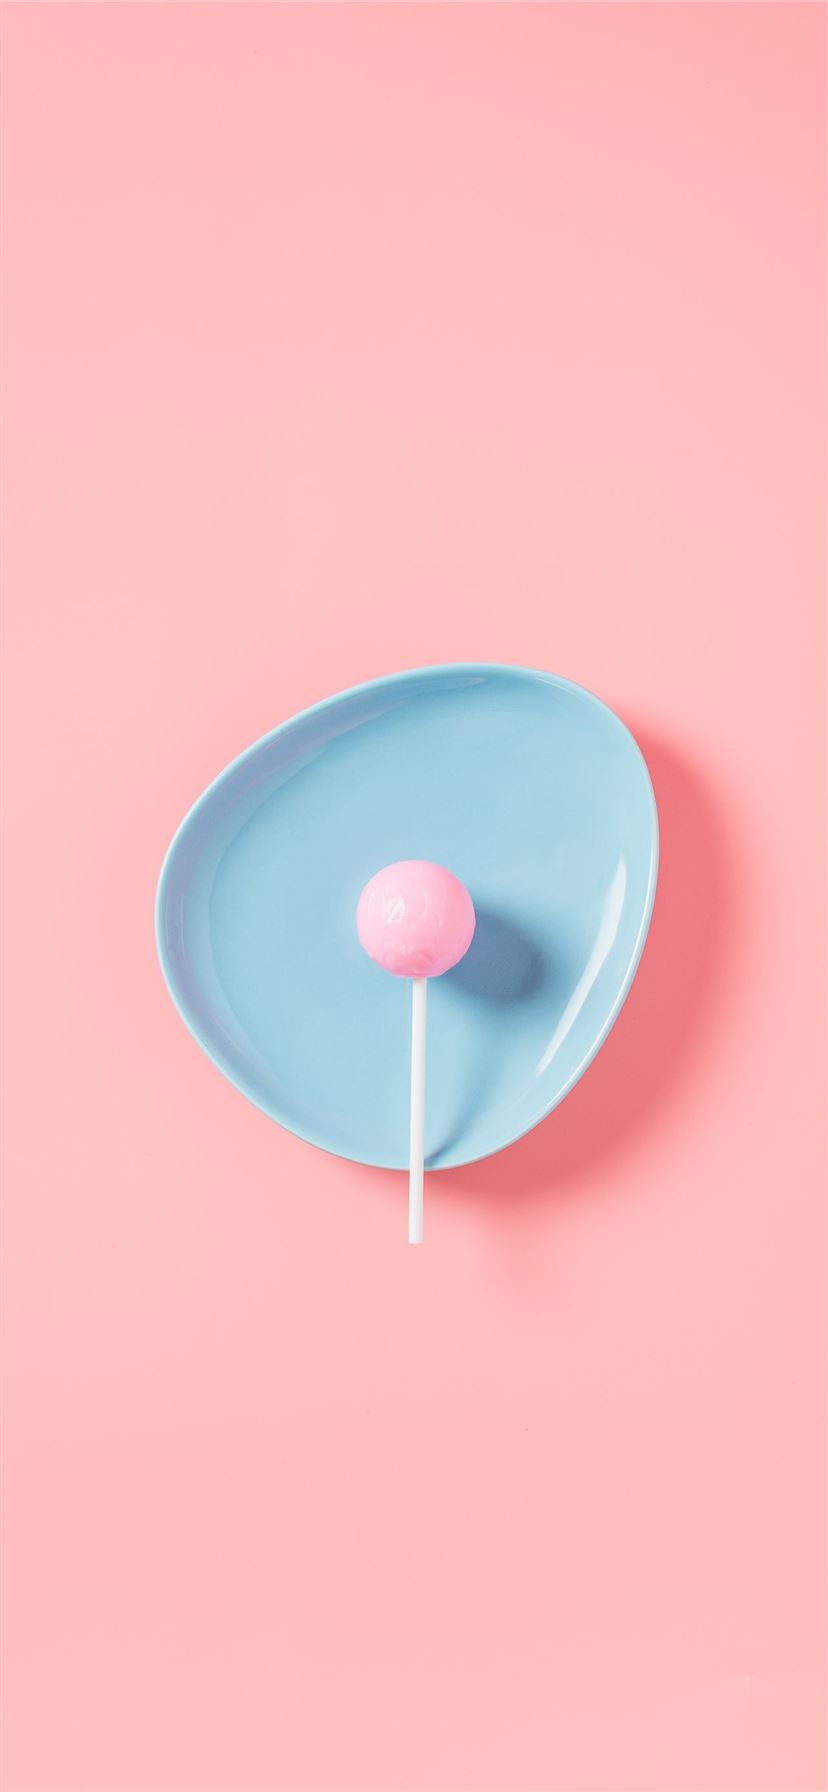 lollipop in blue plate iPhone 11 wallpaper 